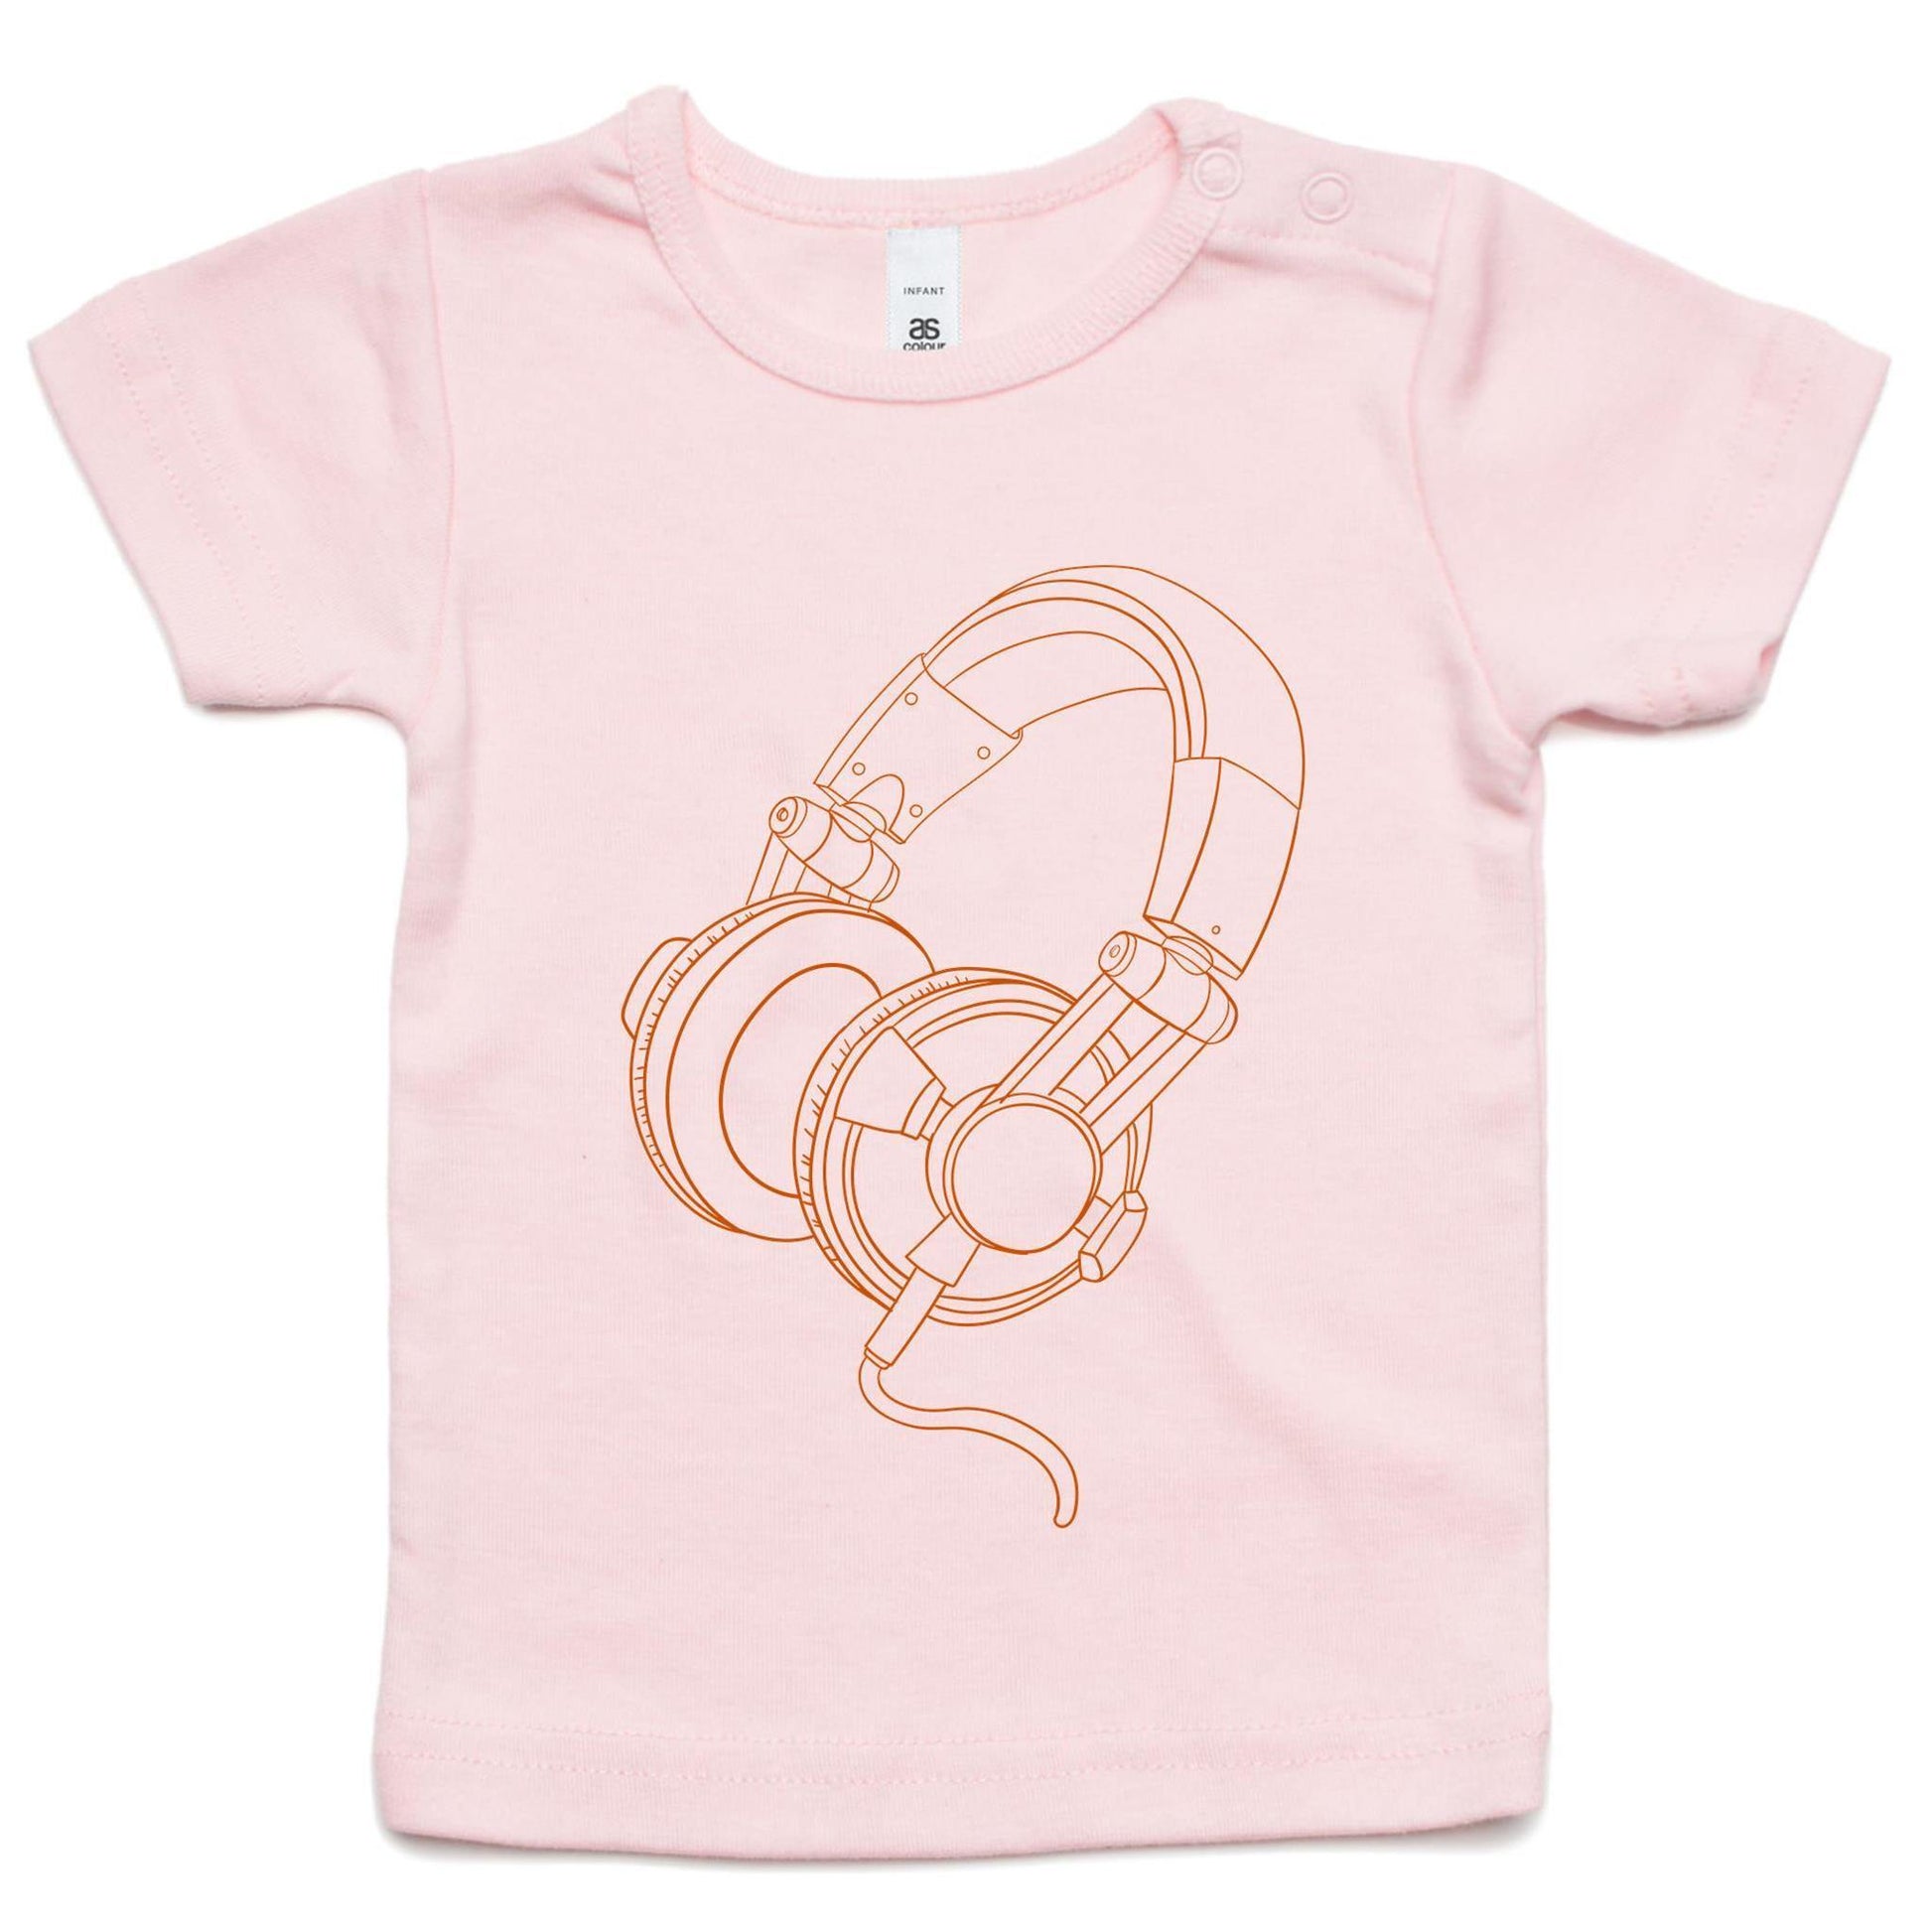 Headphones - Baby T-shirt Pink Baby T-shirt kids Music